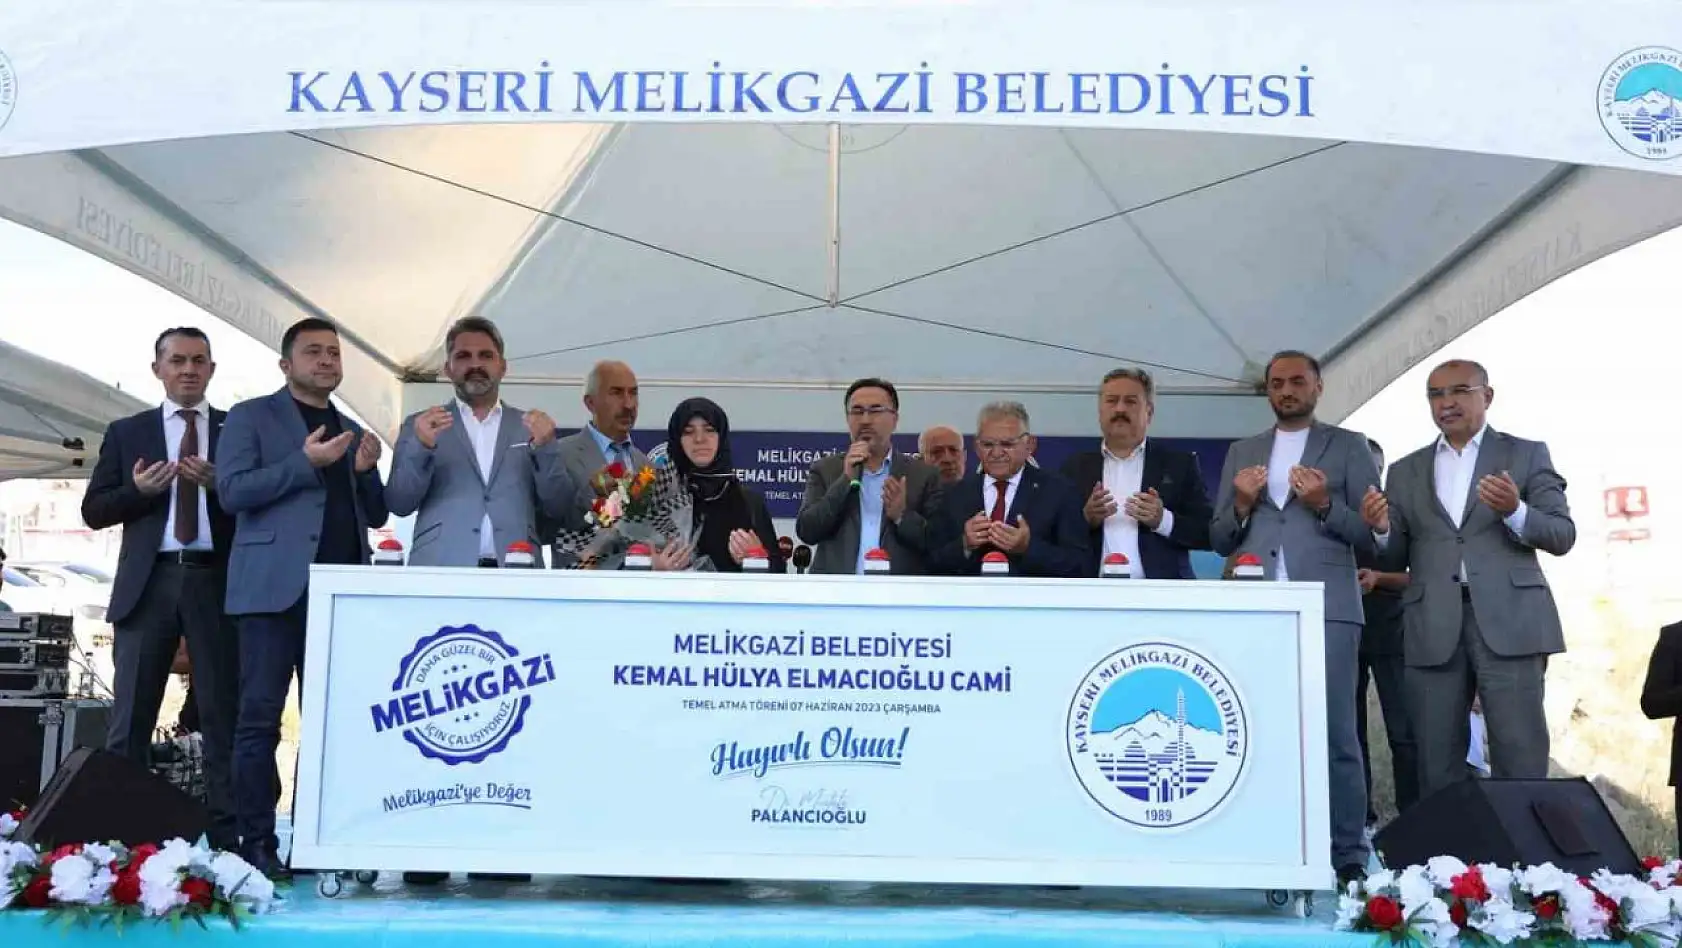 Kemal-Hülya Elmacıoğlu Cami'nin temeli atıldı